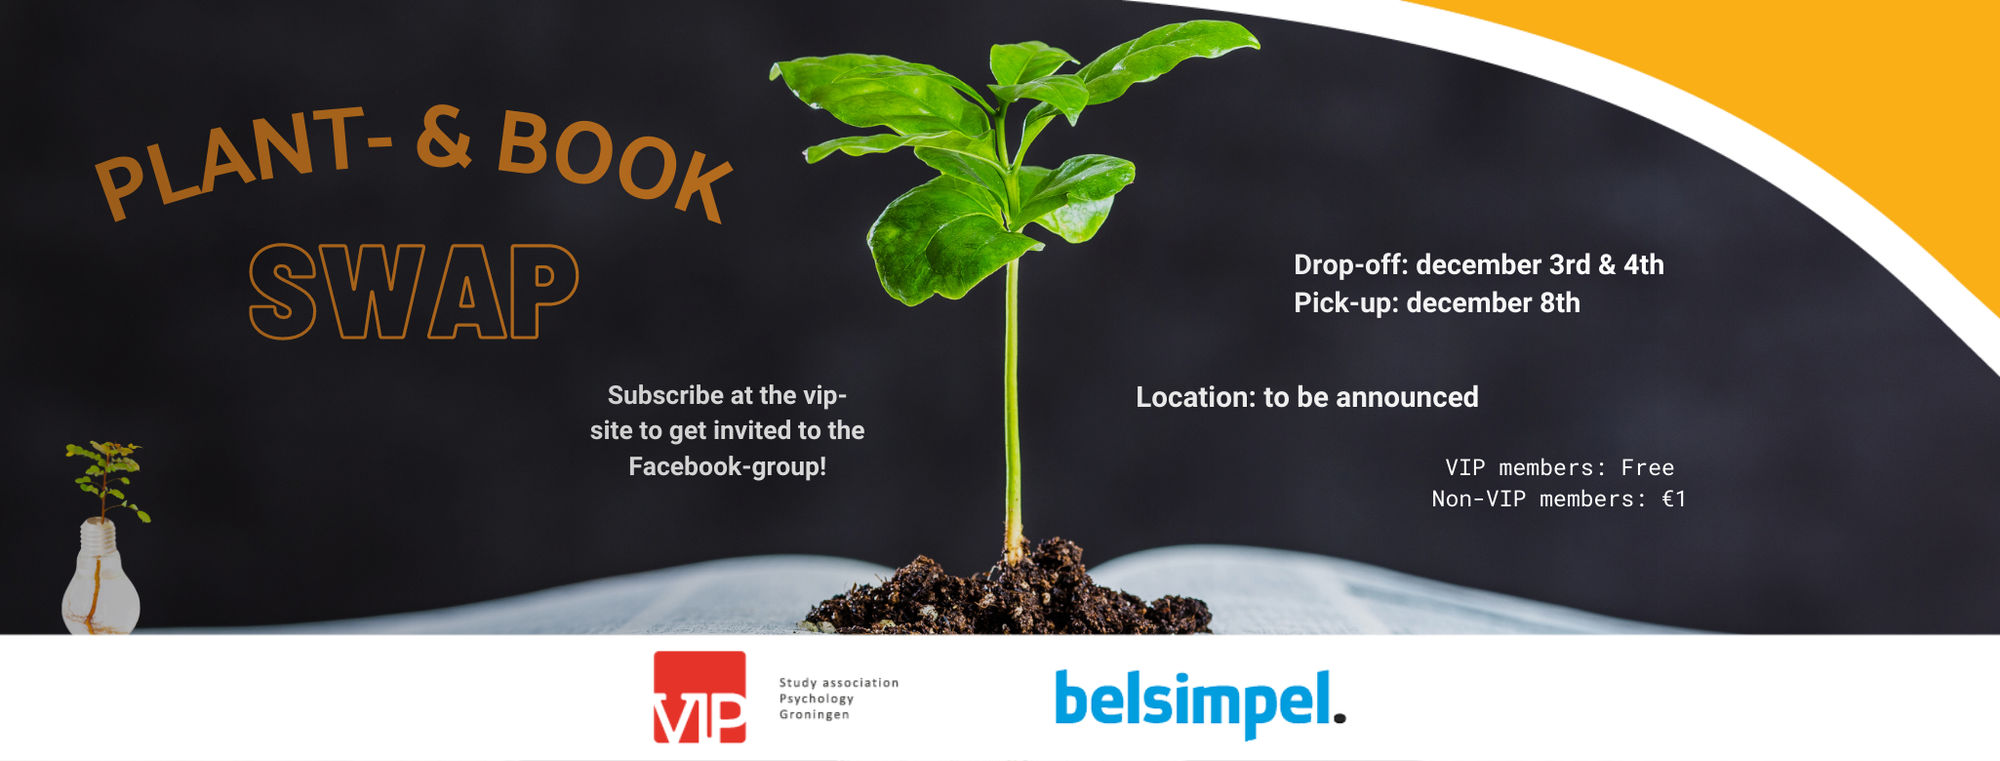 VIP: Plant- & Bookswap